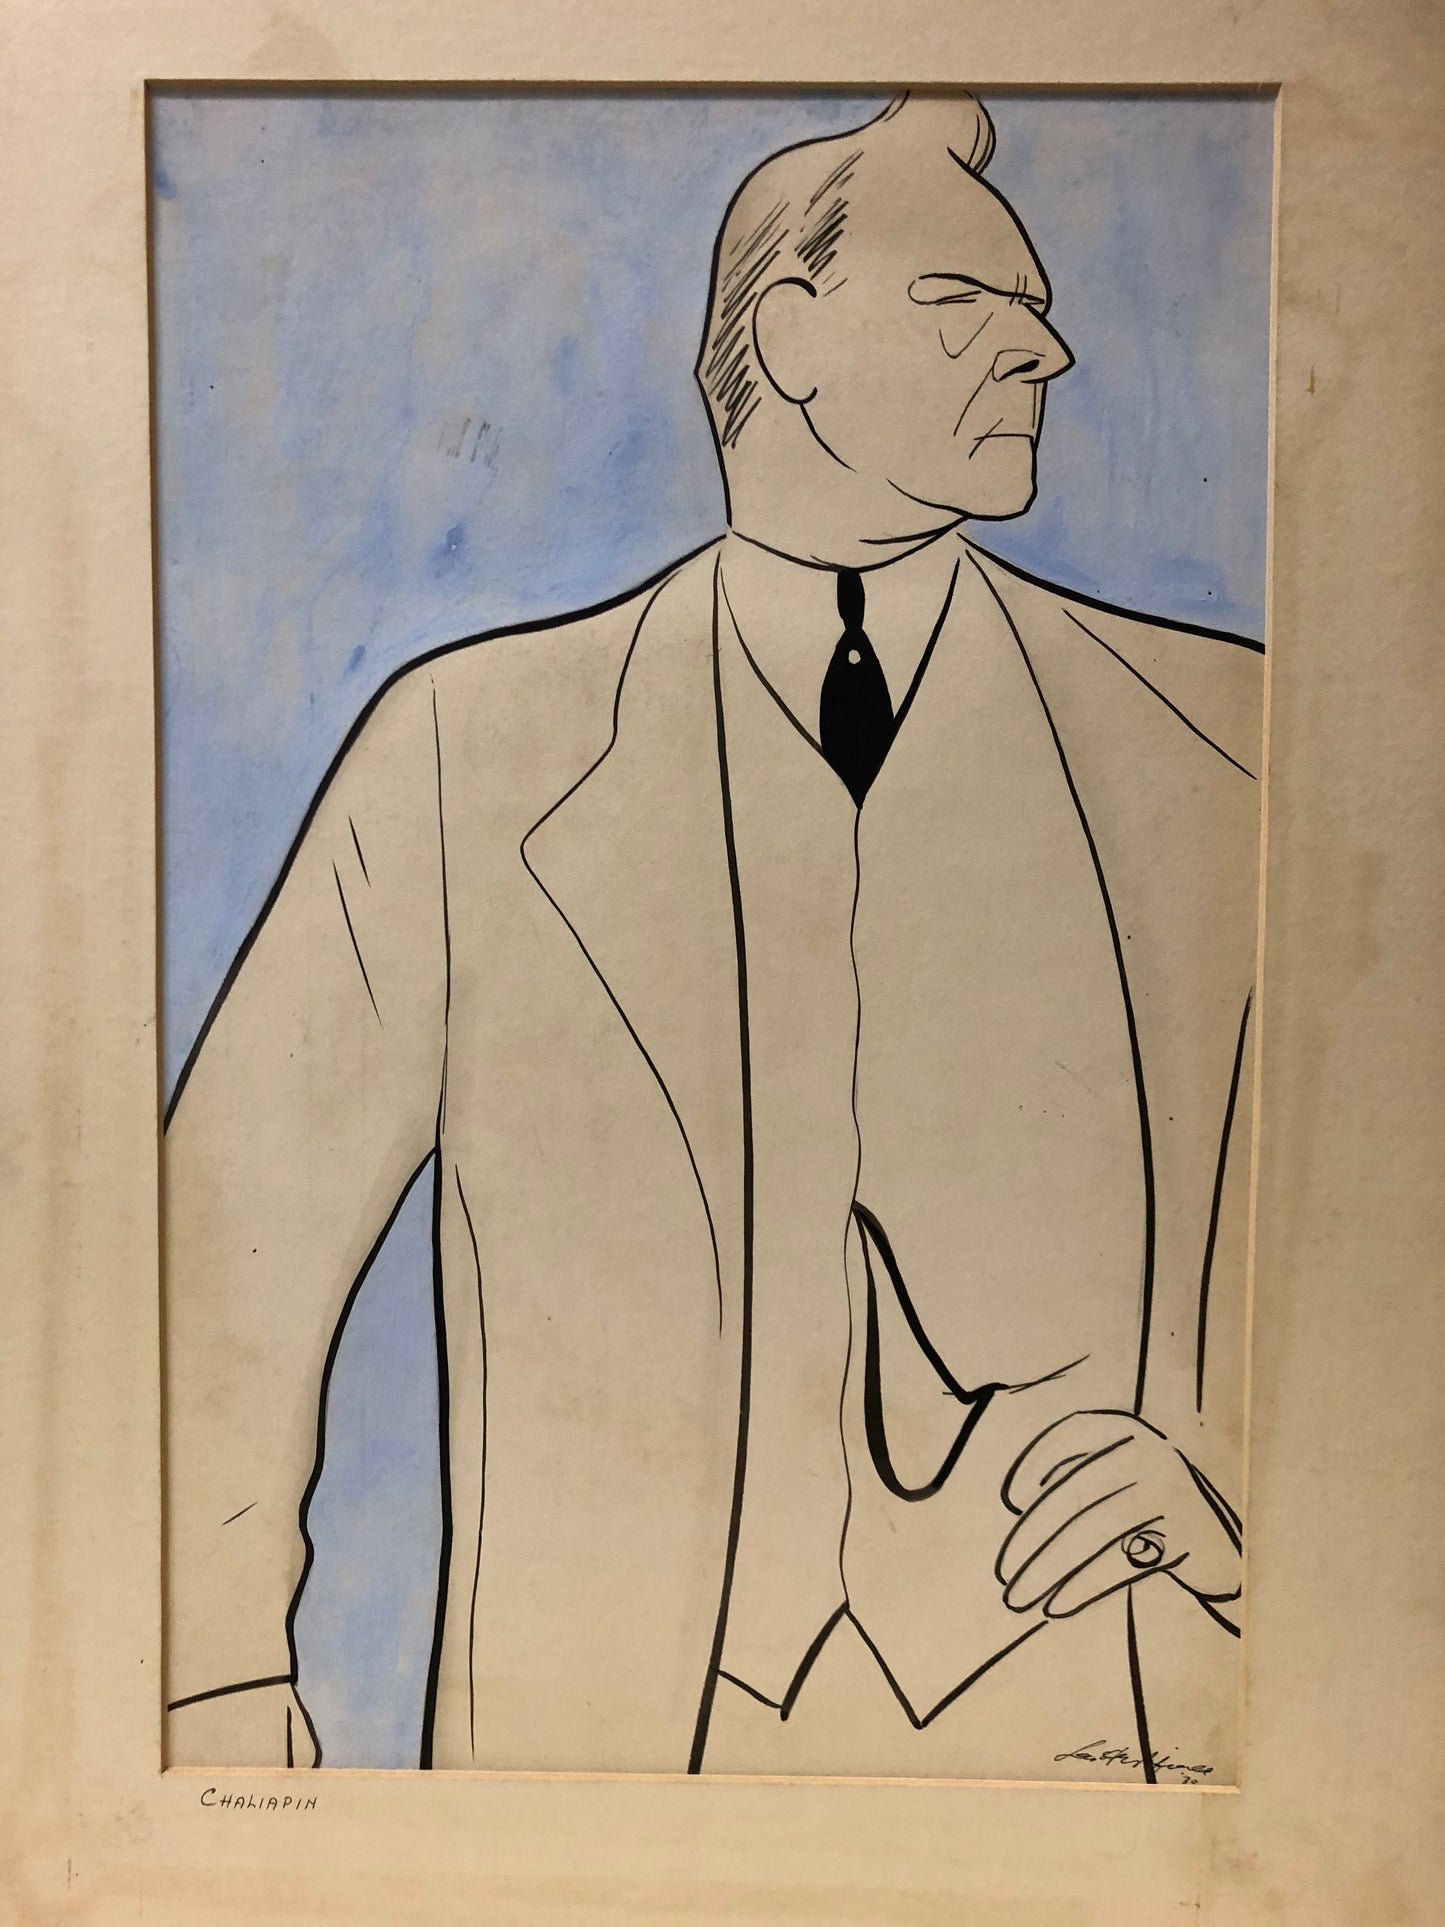 Set of 3 Leo Hershfield Drawings: "Serge Jaroff", "Stowkowsky", and "Chaliapin"